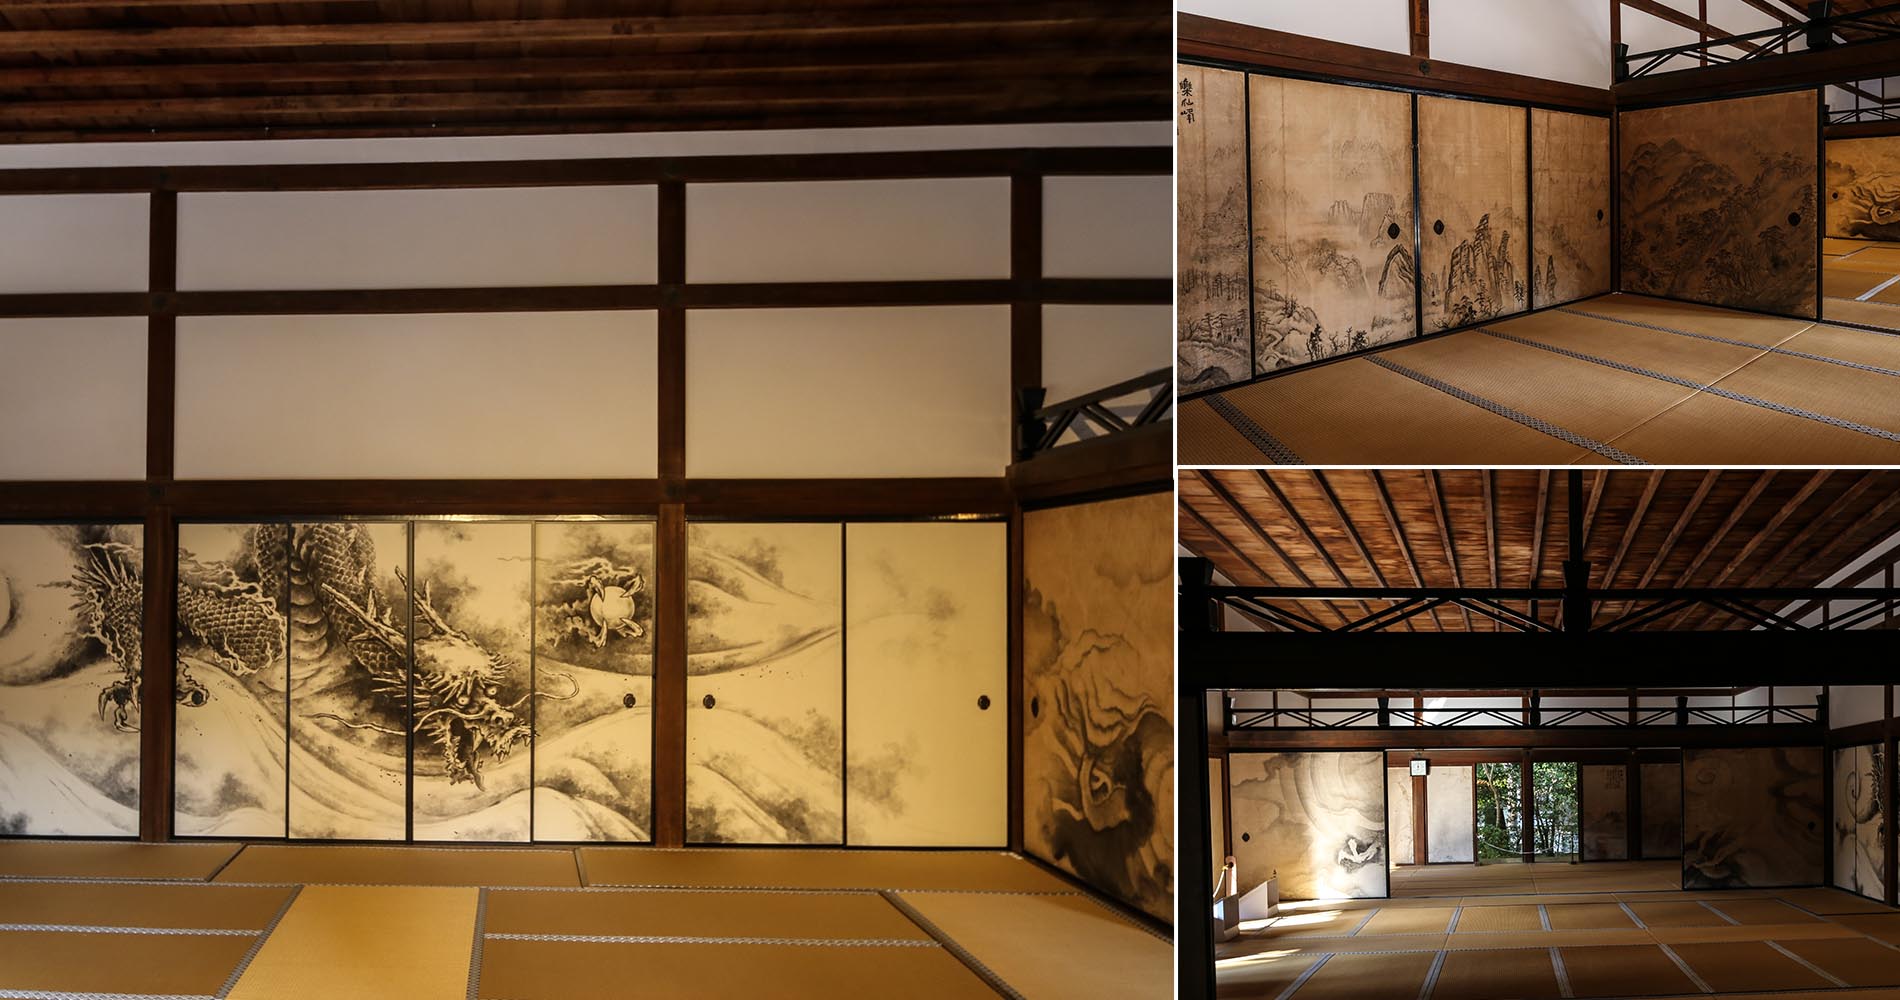 Zoroku (tea room) du Ryoan-ji